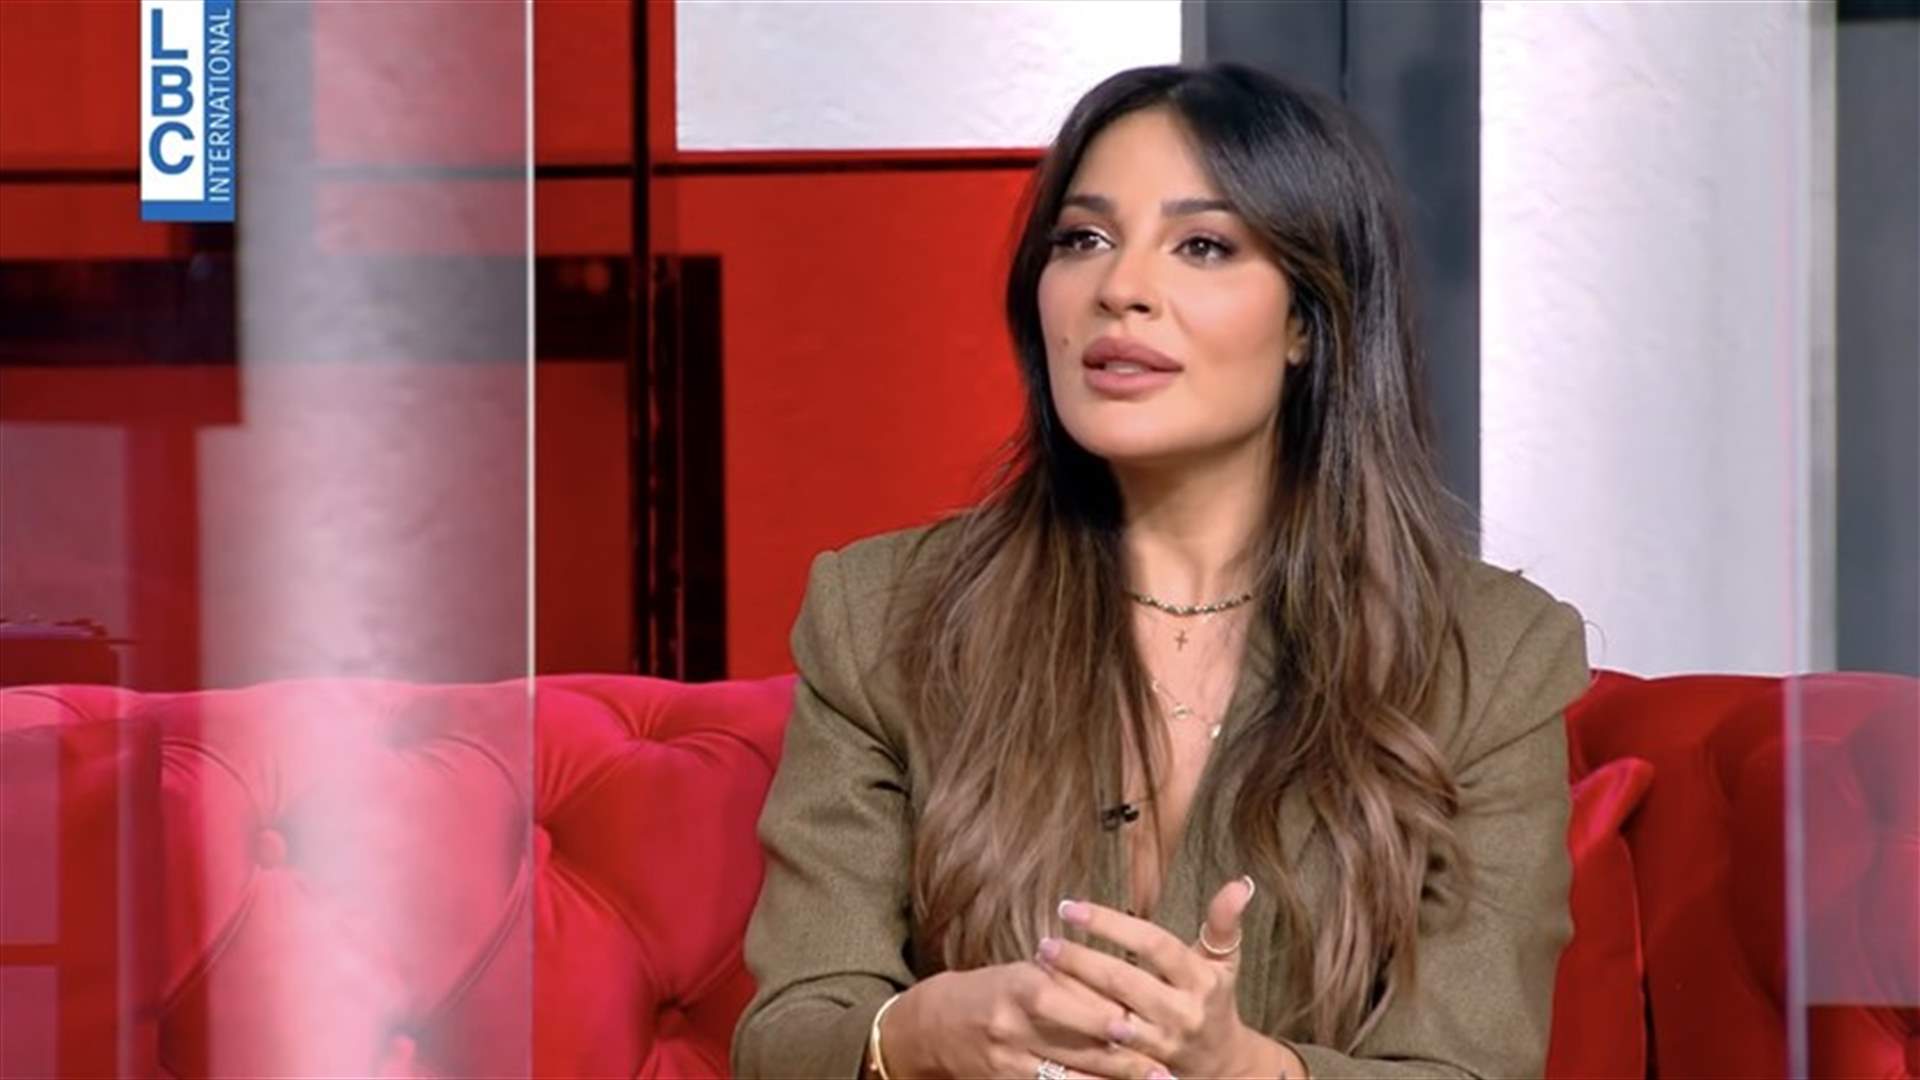 بعد انفجار بيروت... رسالة من نادين نسيب نجيم لطفليها في أحمر بالخط العريض (فيديو)